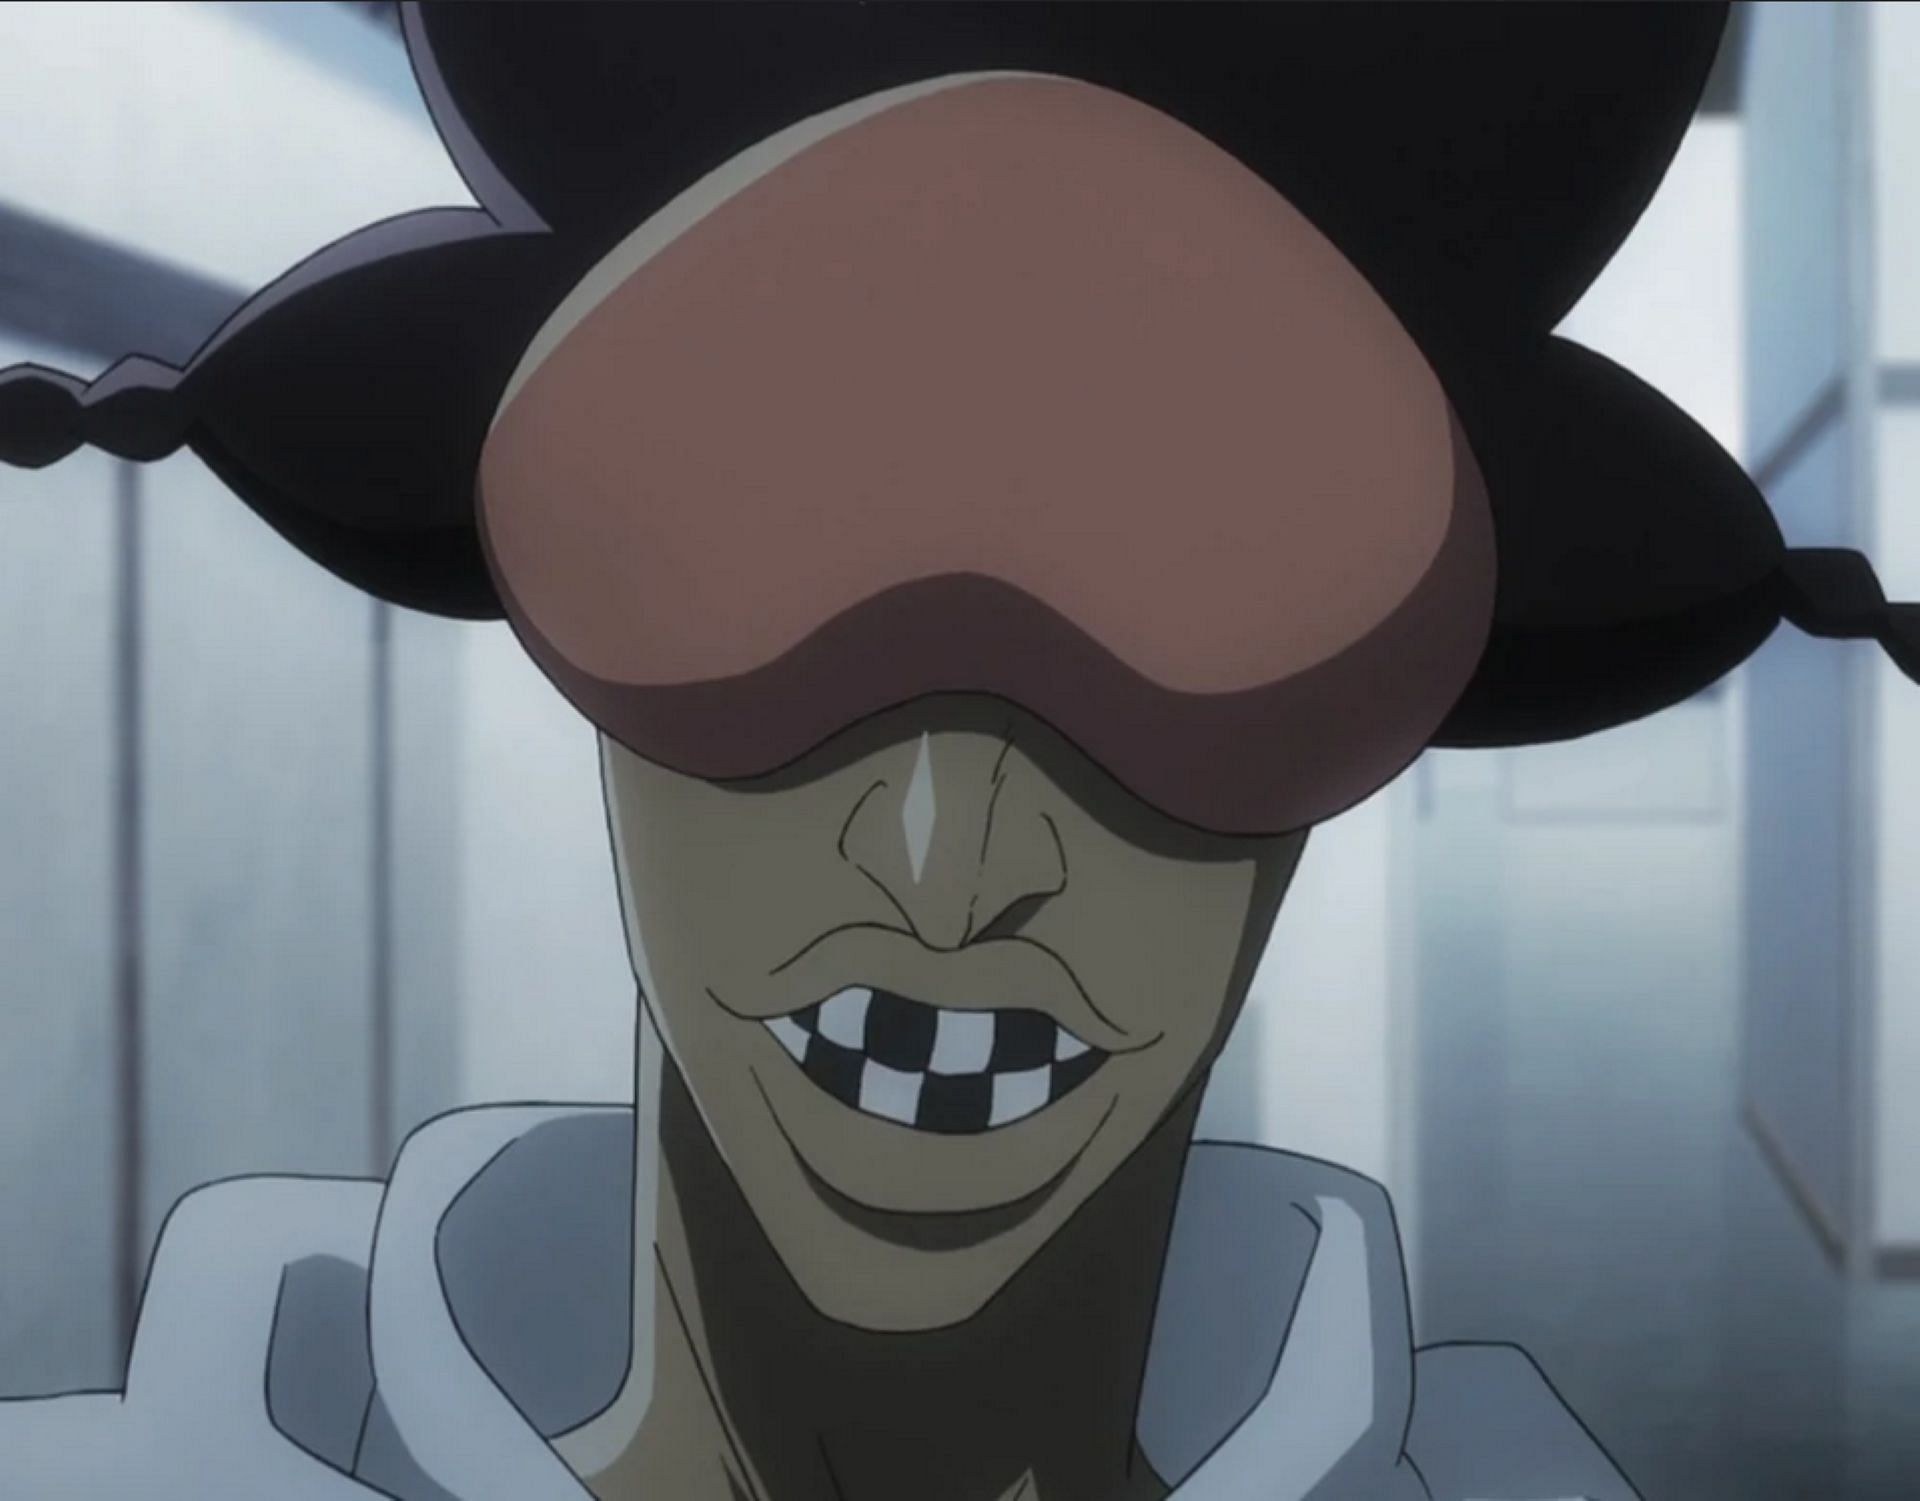 Najahkoop in the Bleach TYBW anime (Image via Studio Pierrot)